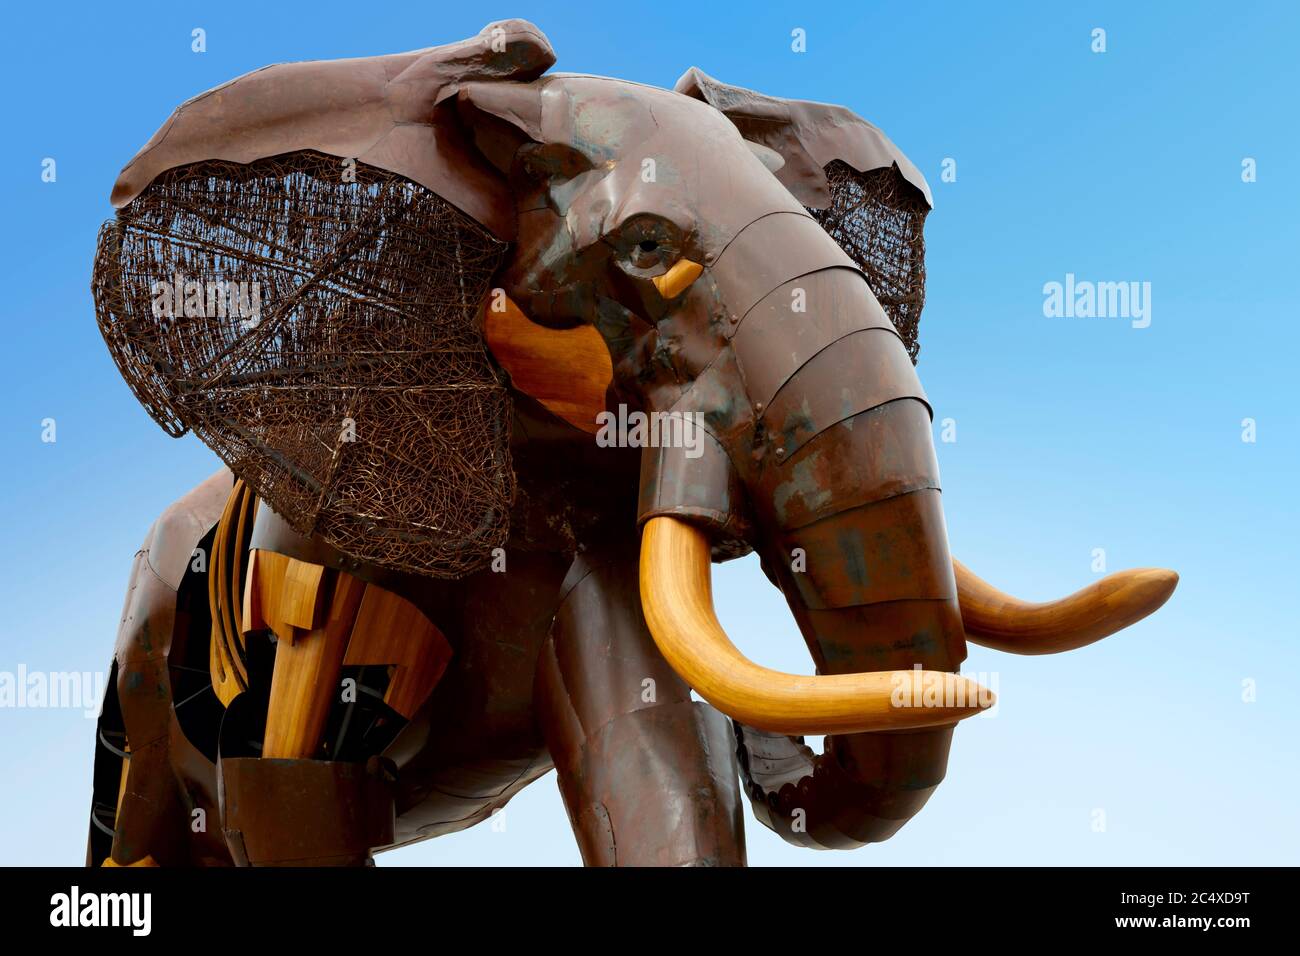 Sculpture africaine d'éléphant conçue par Fernando Gonzalez sur fond bleu, Bioparc, Valence, Espagne. Banque D'Images